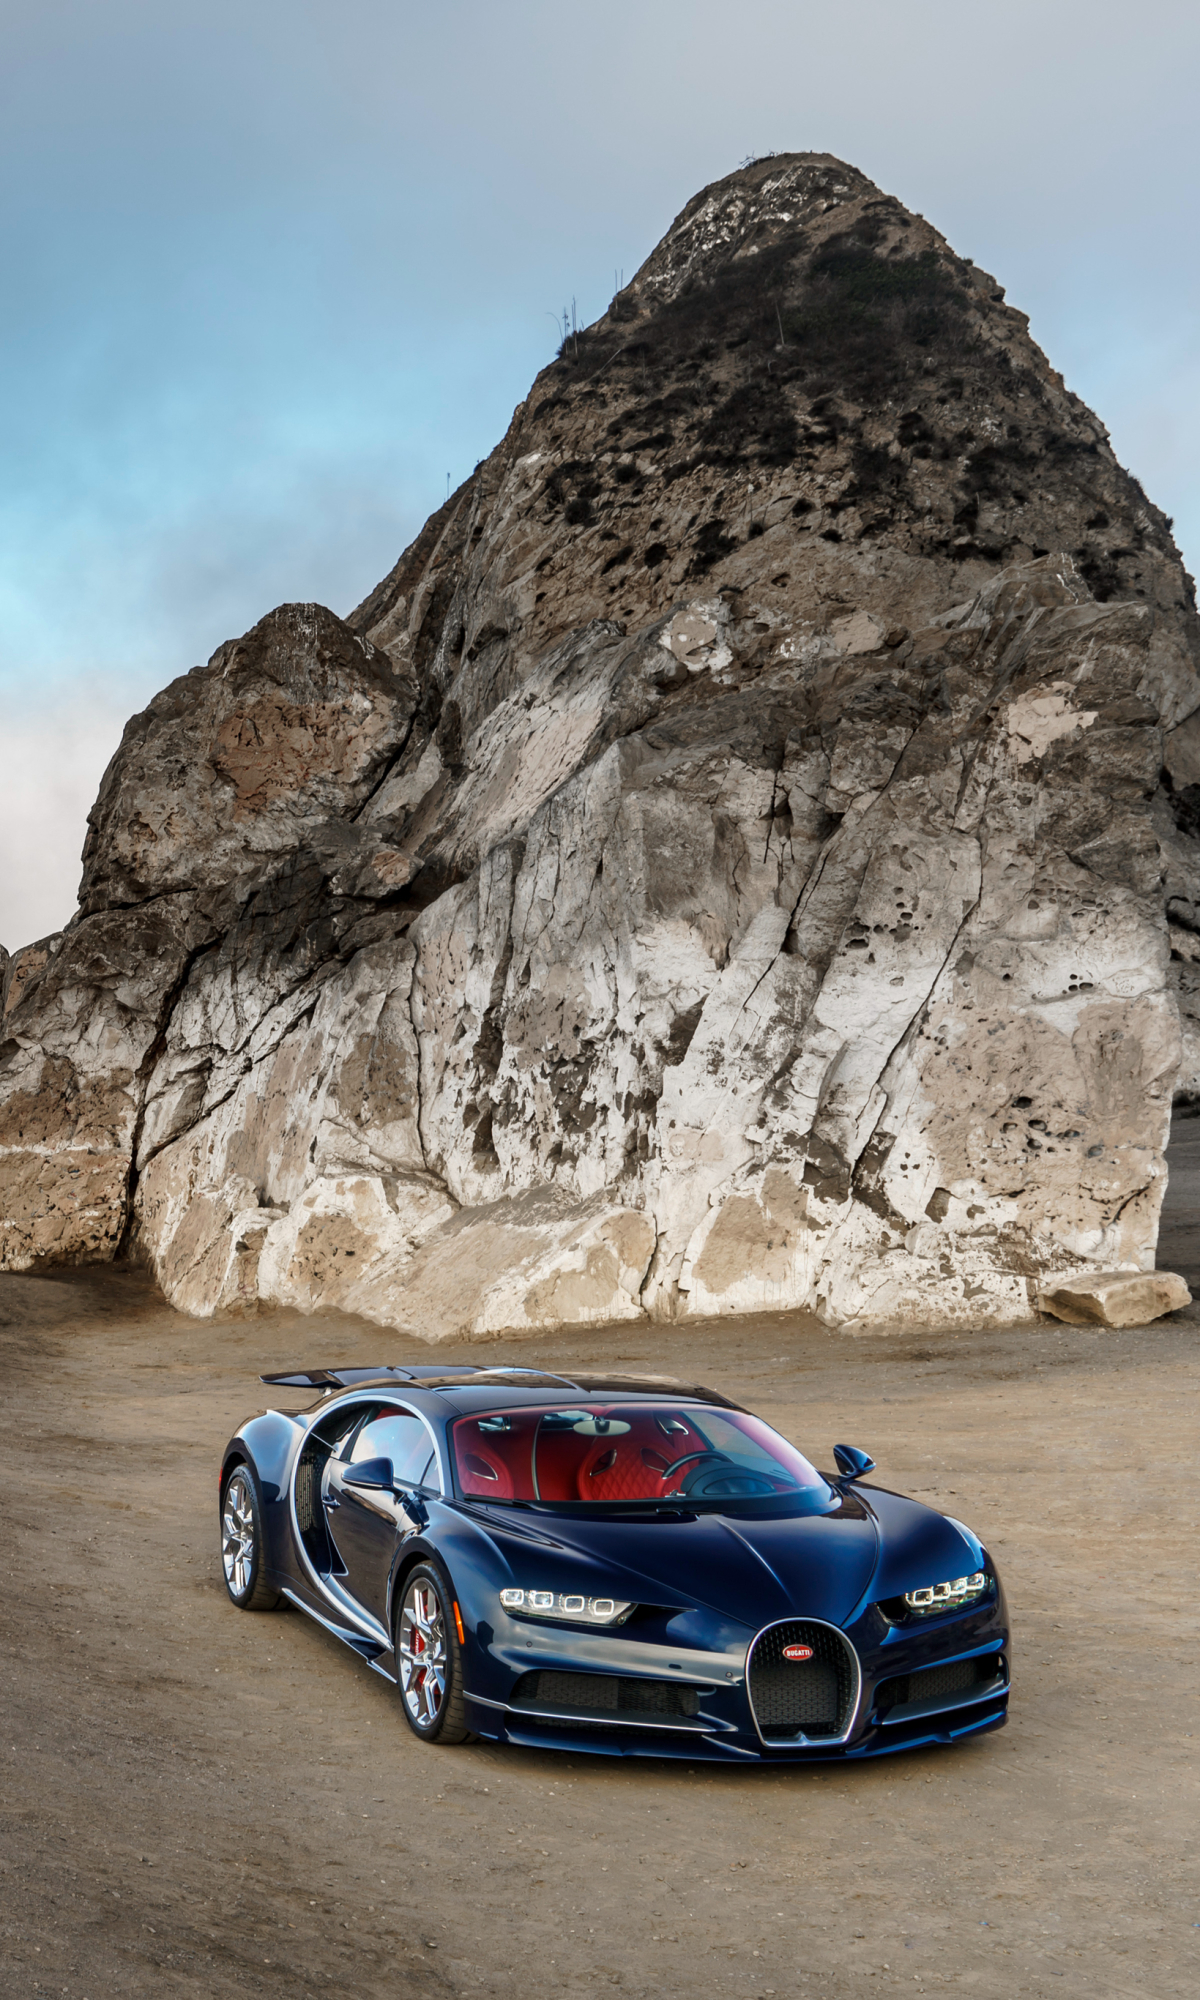 Descarga gratuita de fondo de pantalla para móvil de Bugatti, Coche, Superdeportivo, Bugatti Quirón, Vehículos.